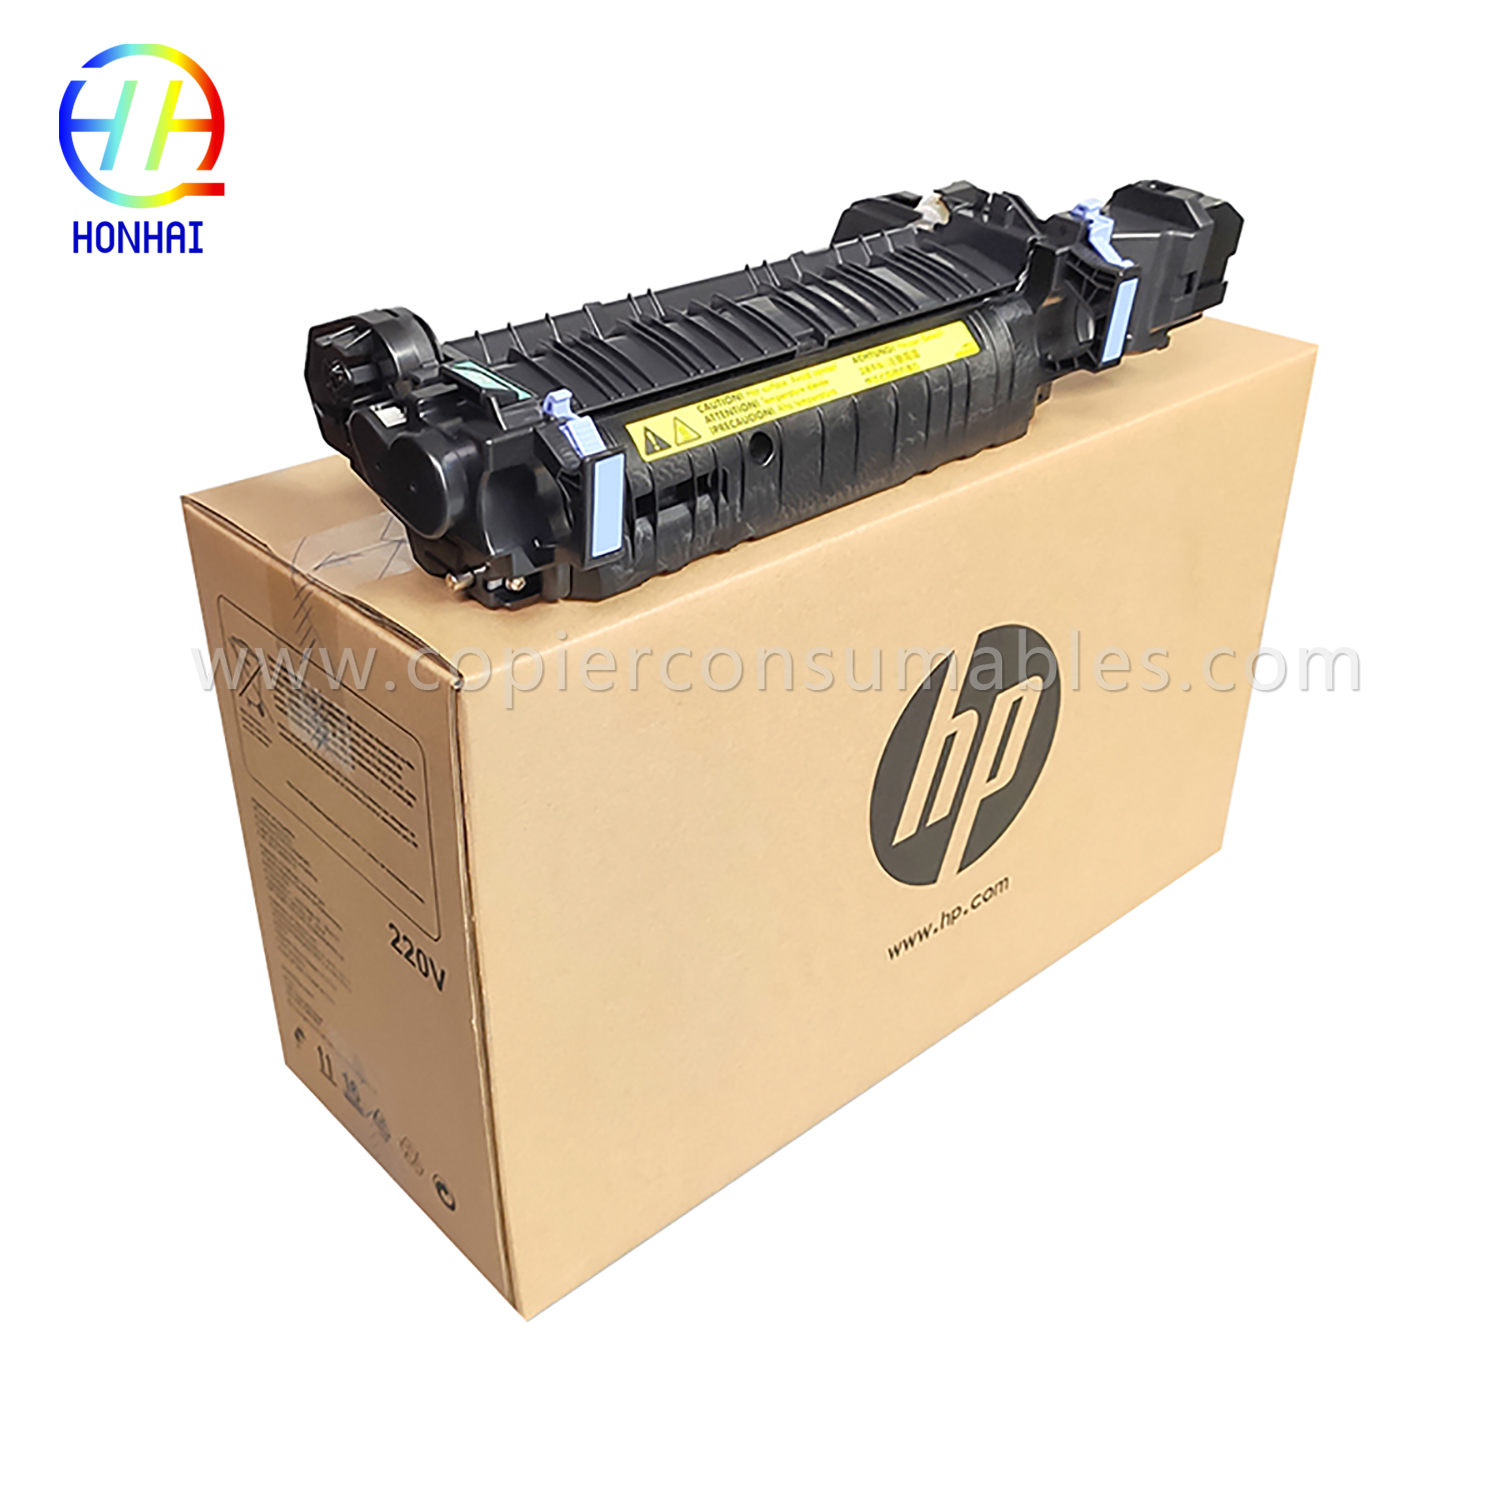 HP Cp4025 (CE247A) 220V (1) को लागि फ्युजर किट